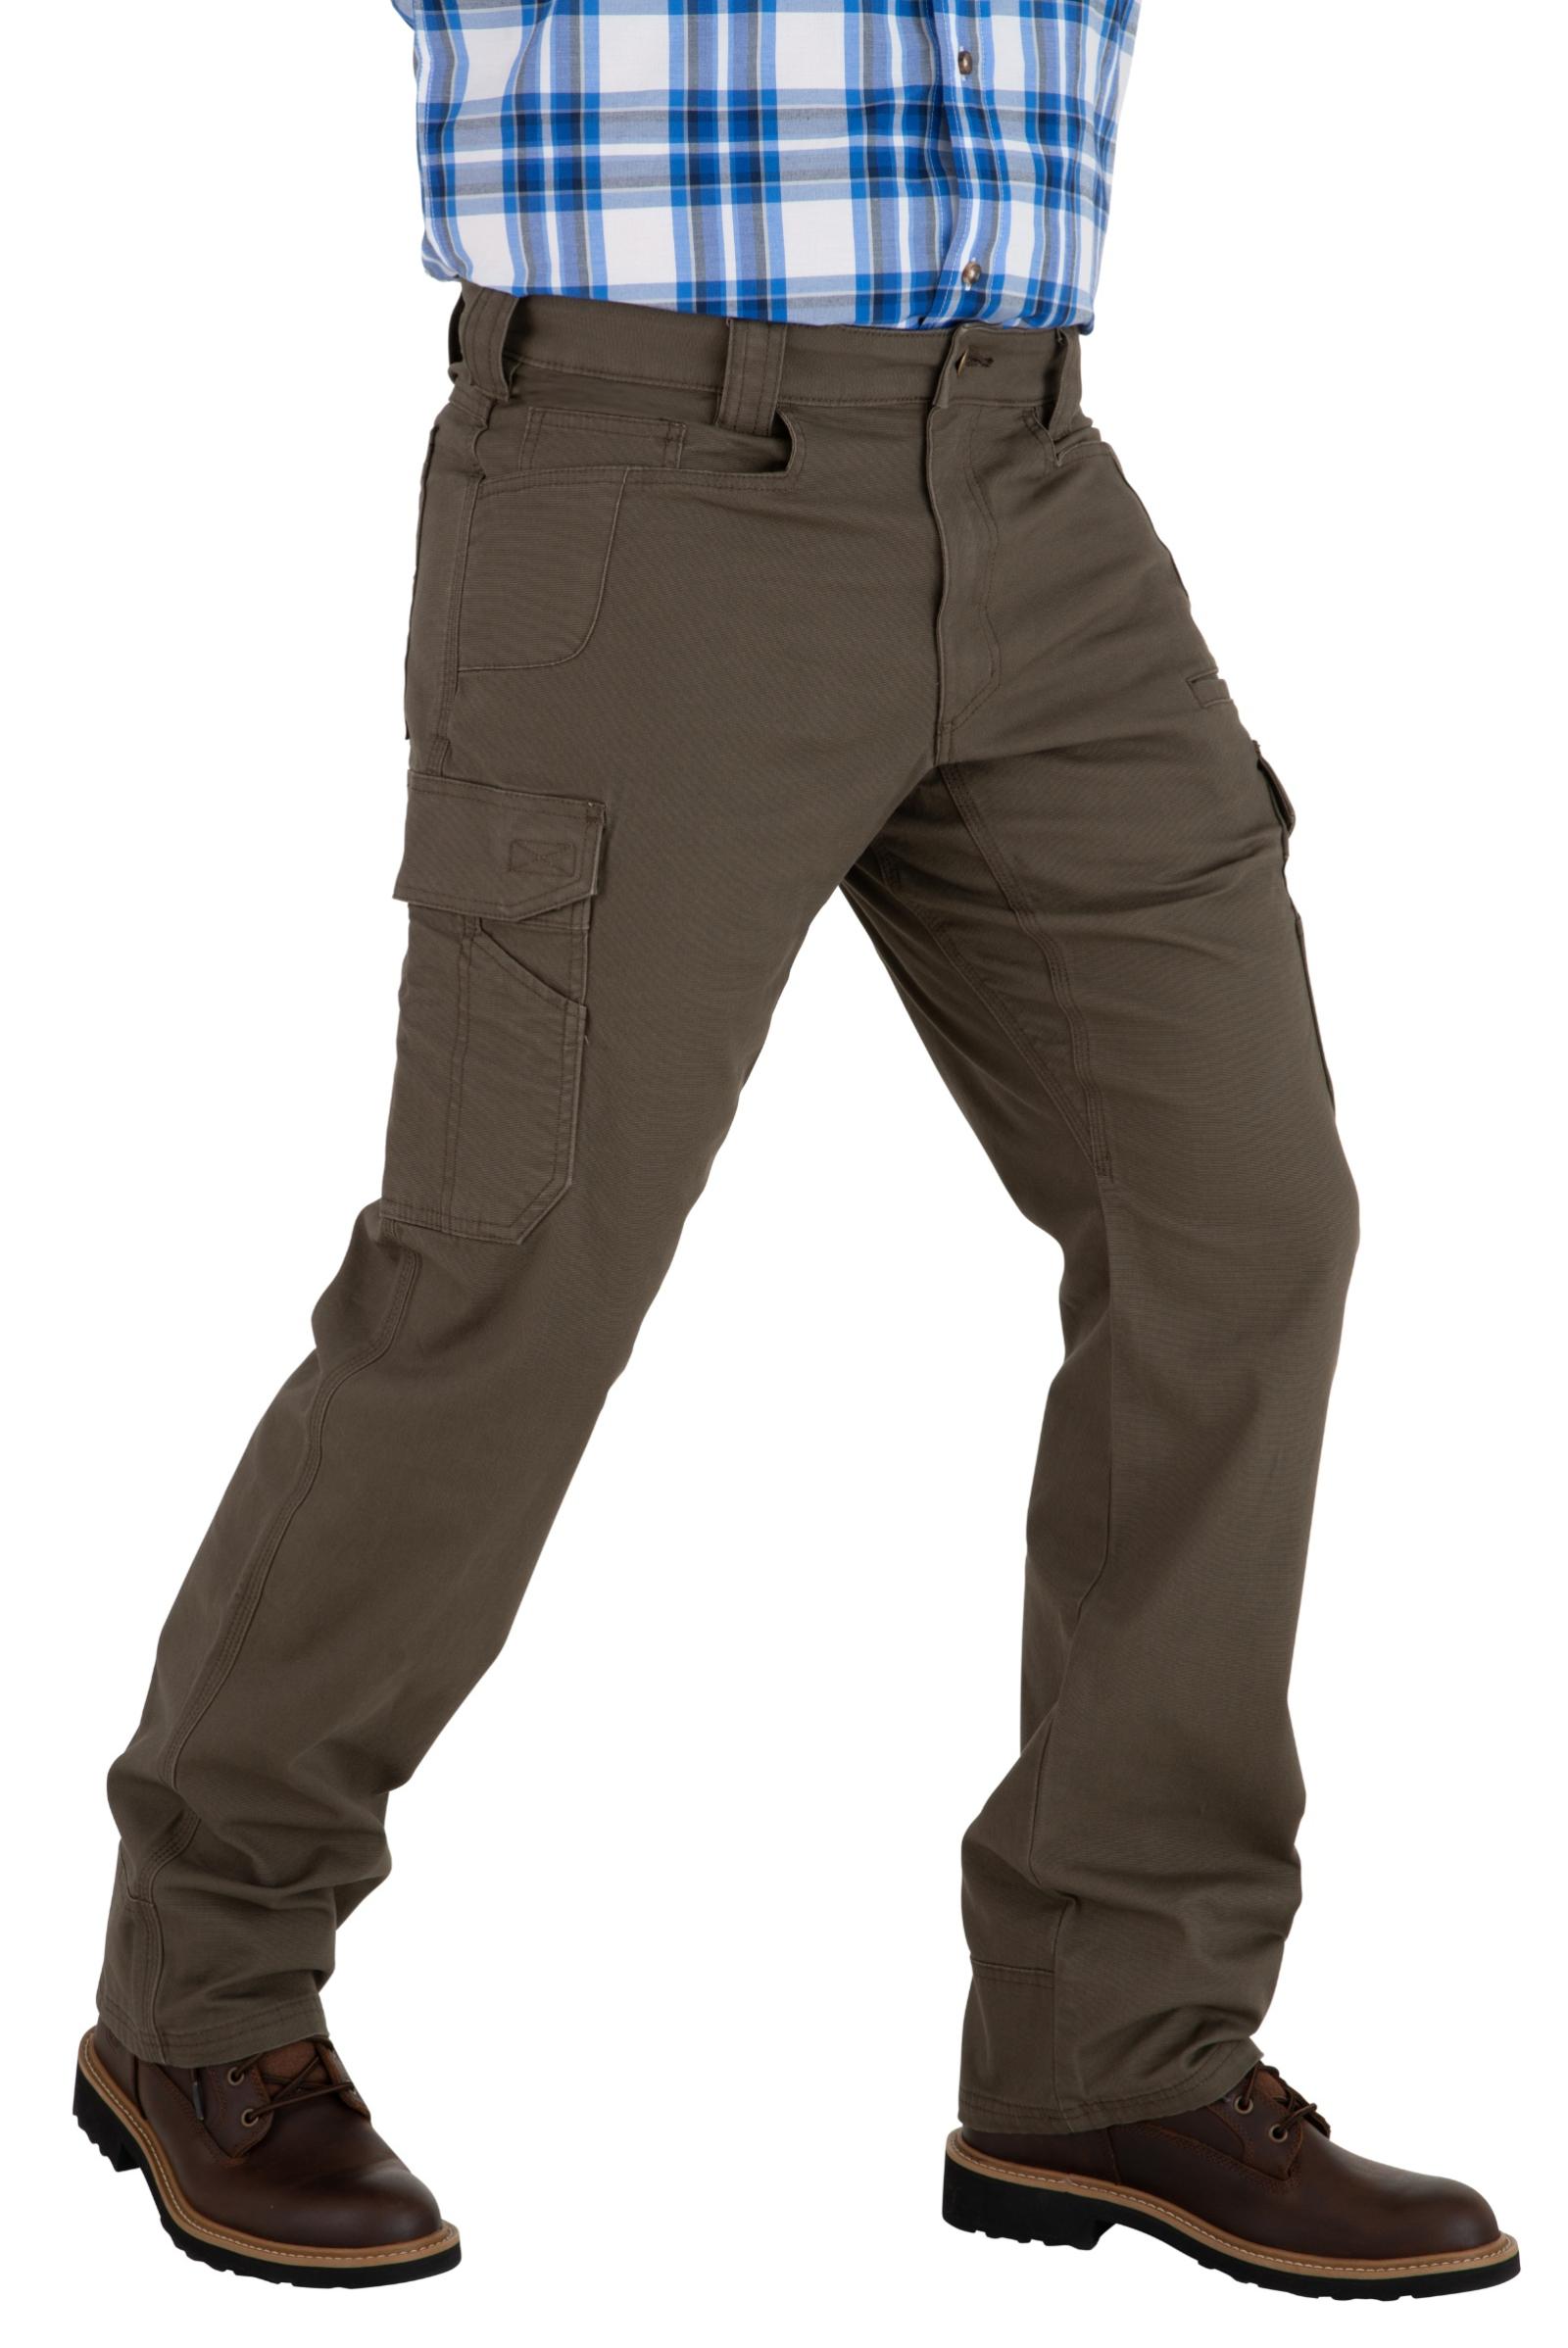 Noble Outfitters Men's Flex Canvas Cargo Pants